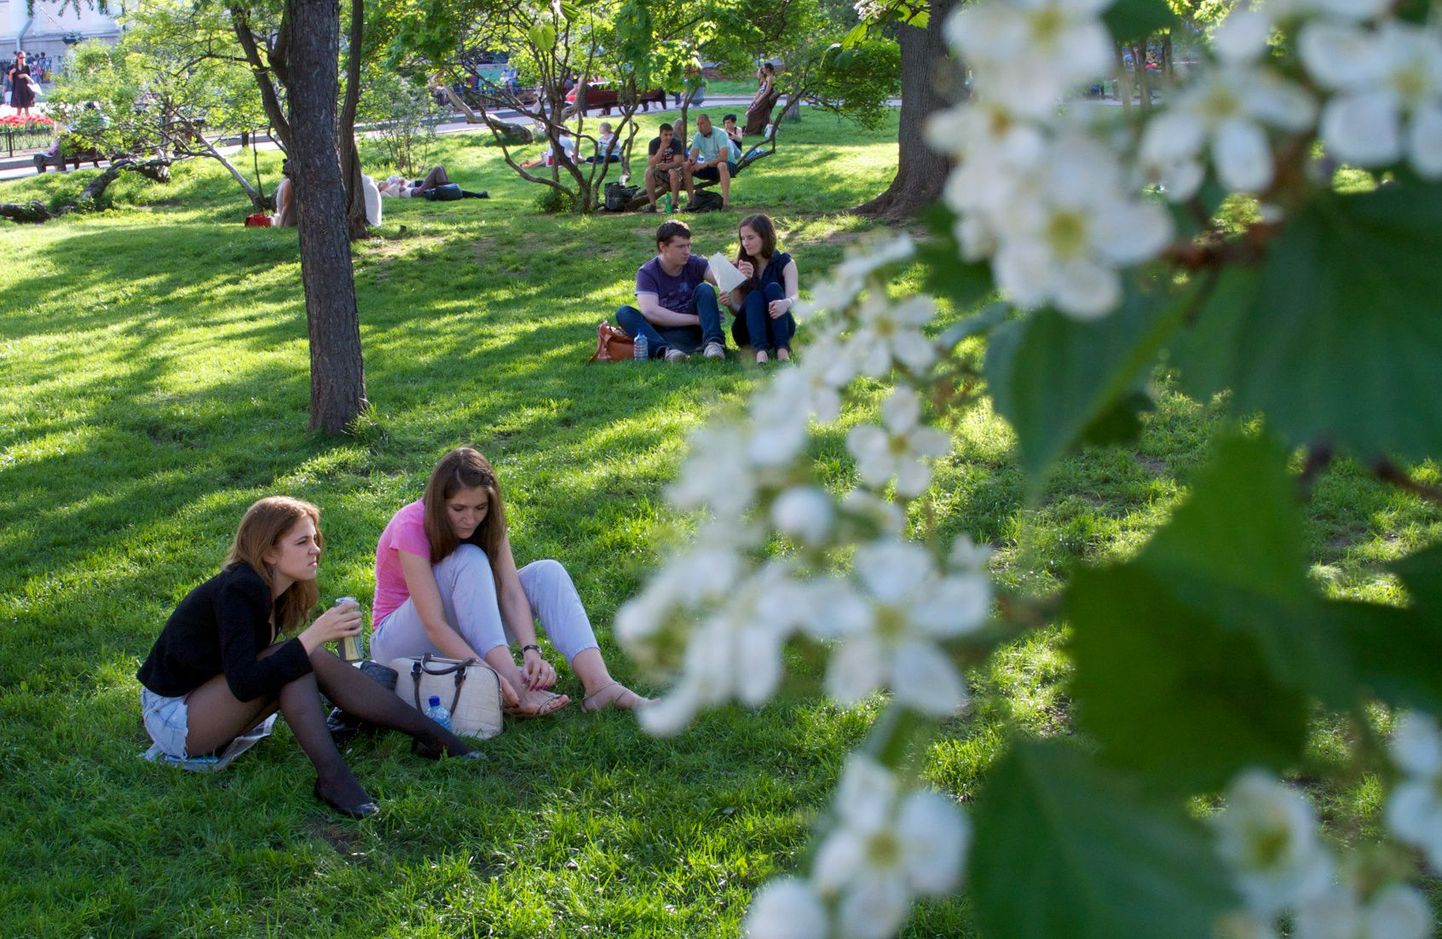 Inimesed naudivad päikeselist ja sooja päeva Kesk-Moskvas asuvas pargis.